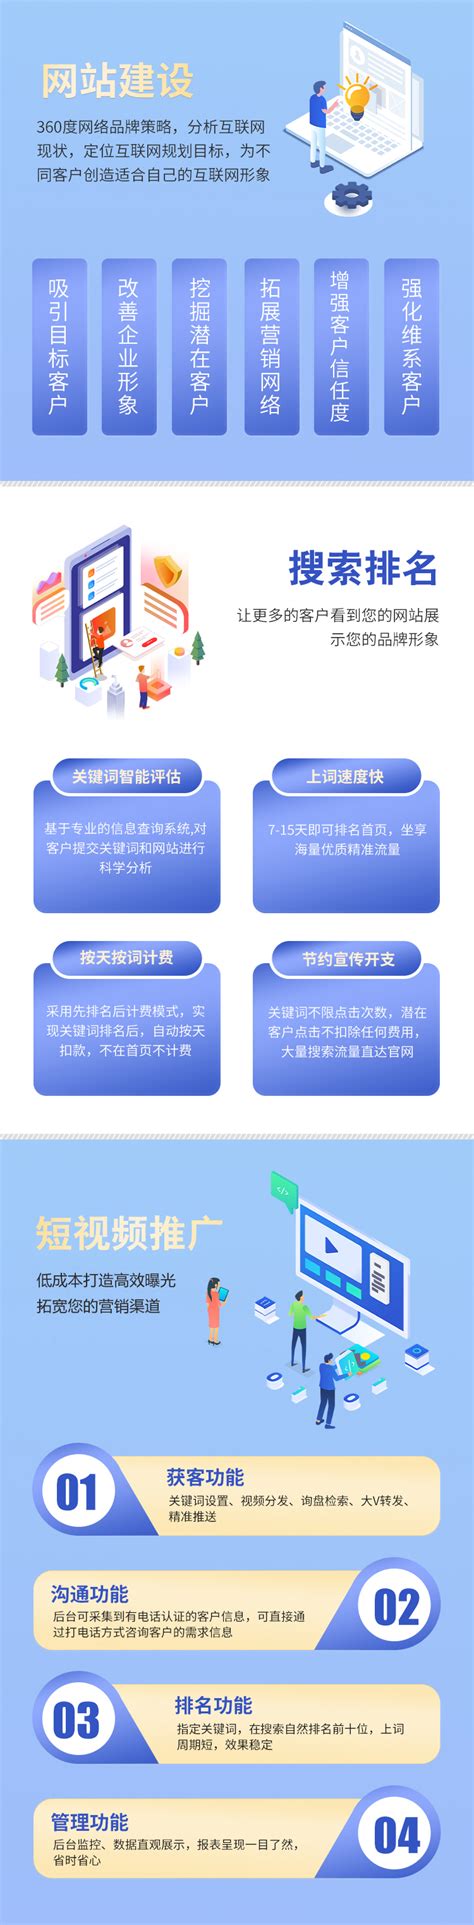 重庆市小程序网站建设